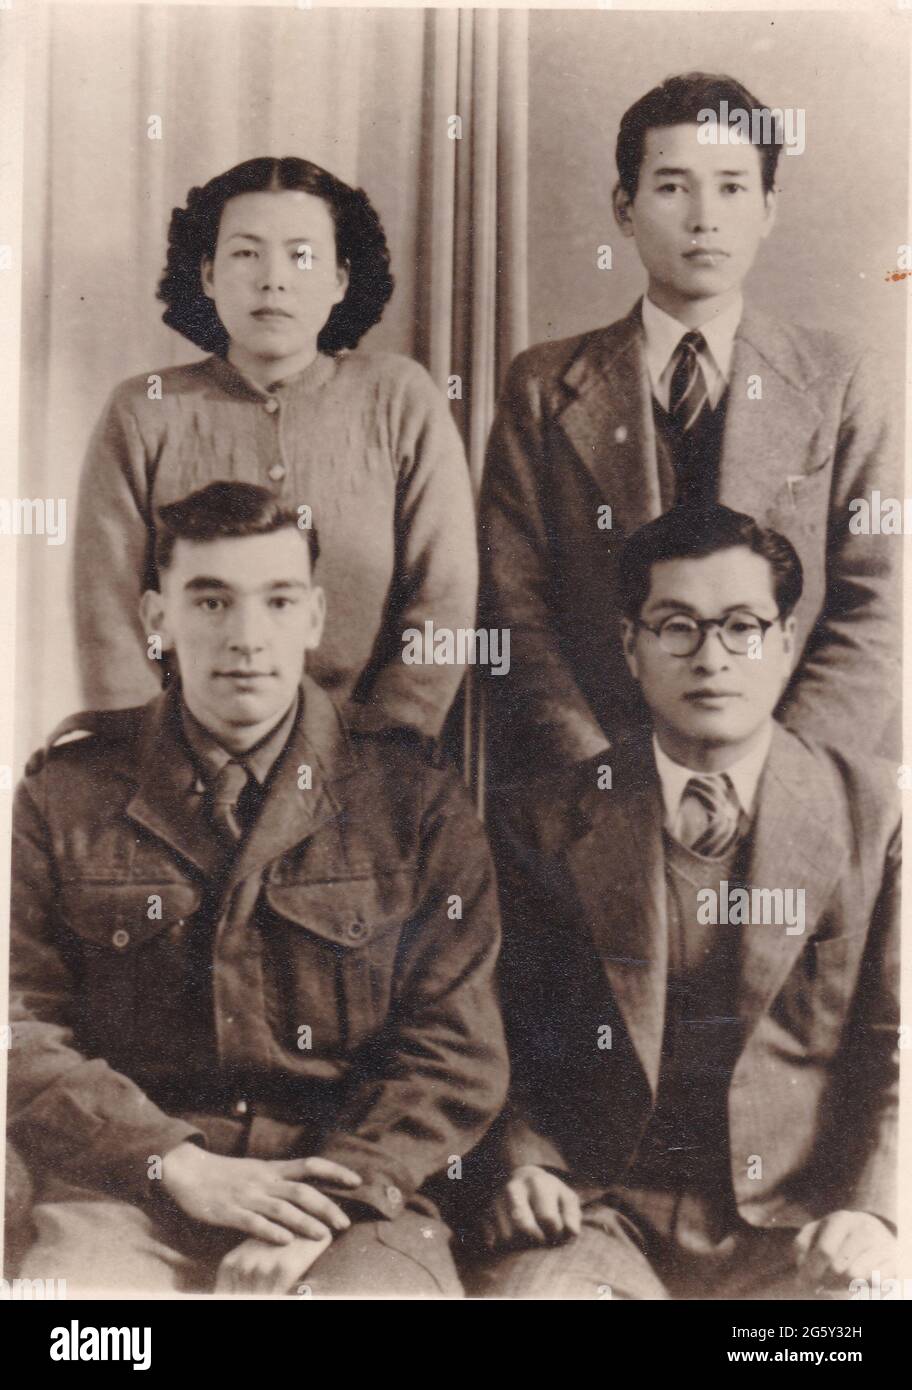 Vintage Schwarz-Weiß-Foto von jungen Menschen, möglicherweise orientalische 1940er Jahre. Stockfoto